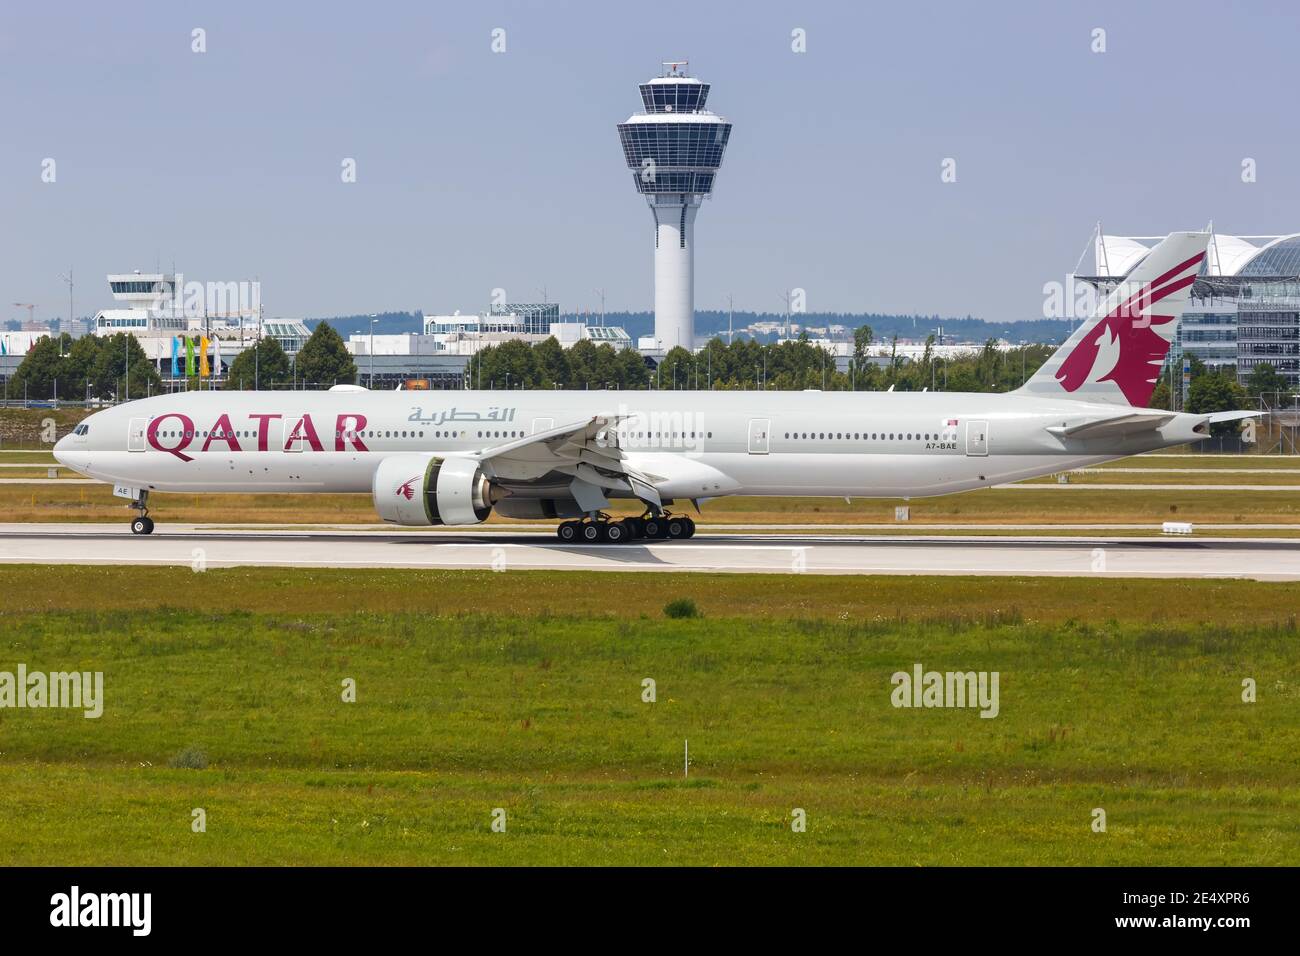 Monaco, Germania - 20 luglio 2019: Aereo Qatar Airways Boeing 777-300ER all'aeroporto di Monaco (MUC) in Germania. Boeing è un produttore americano di aeromobili Foto Stock